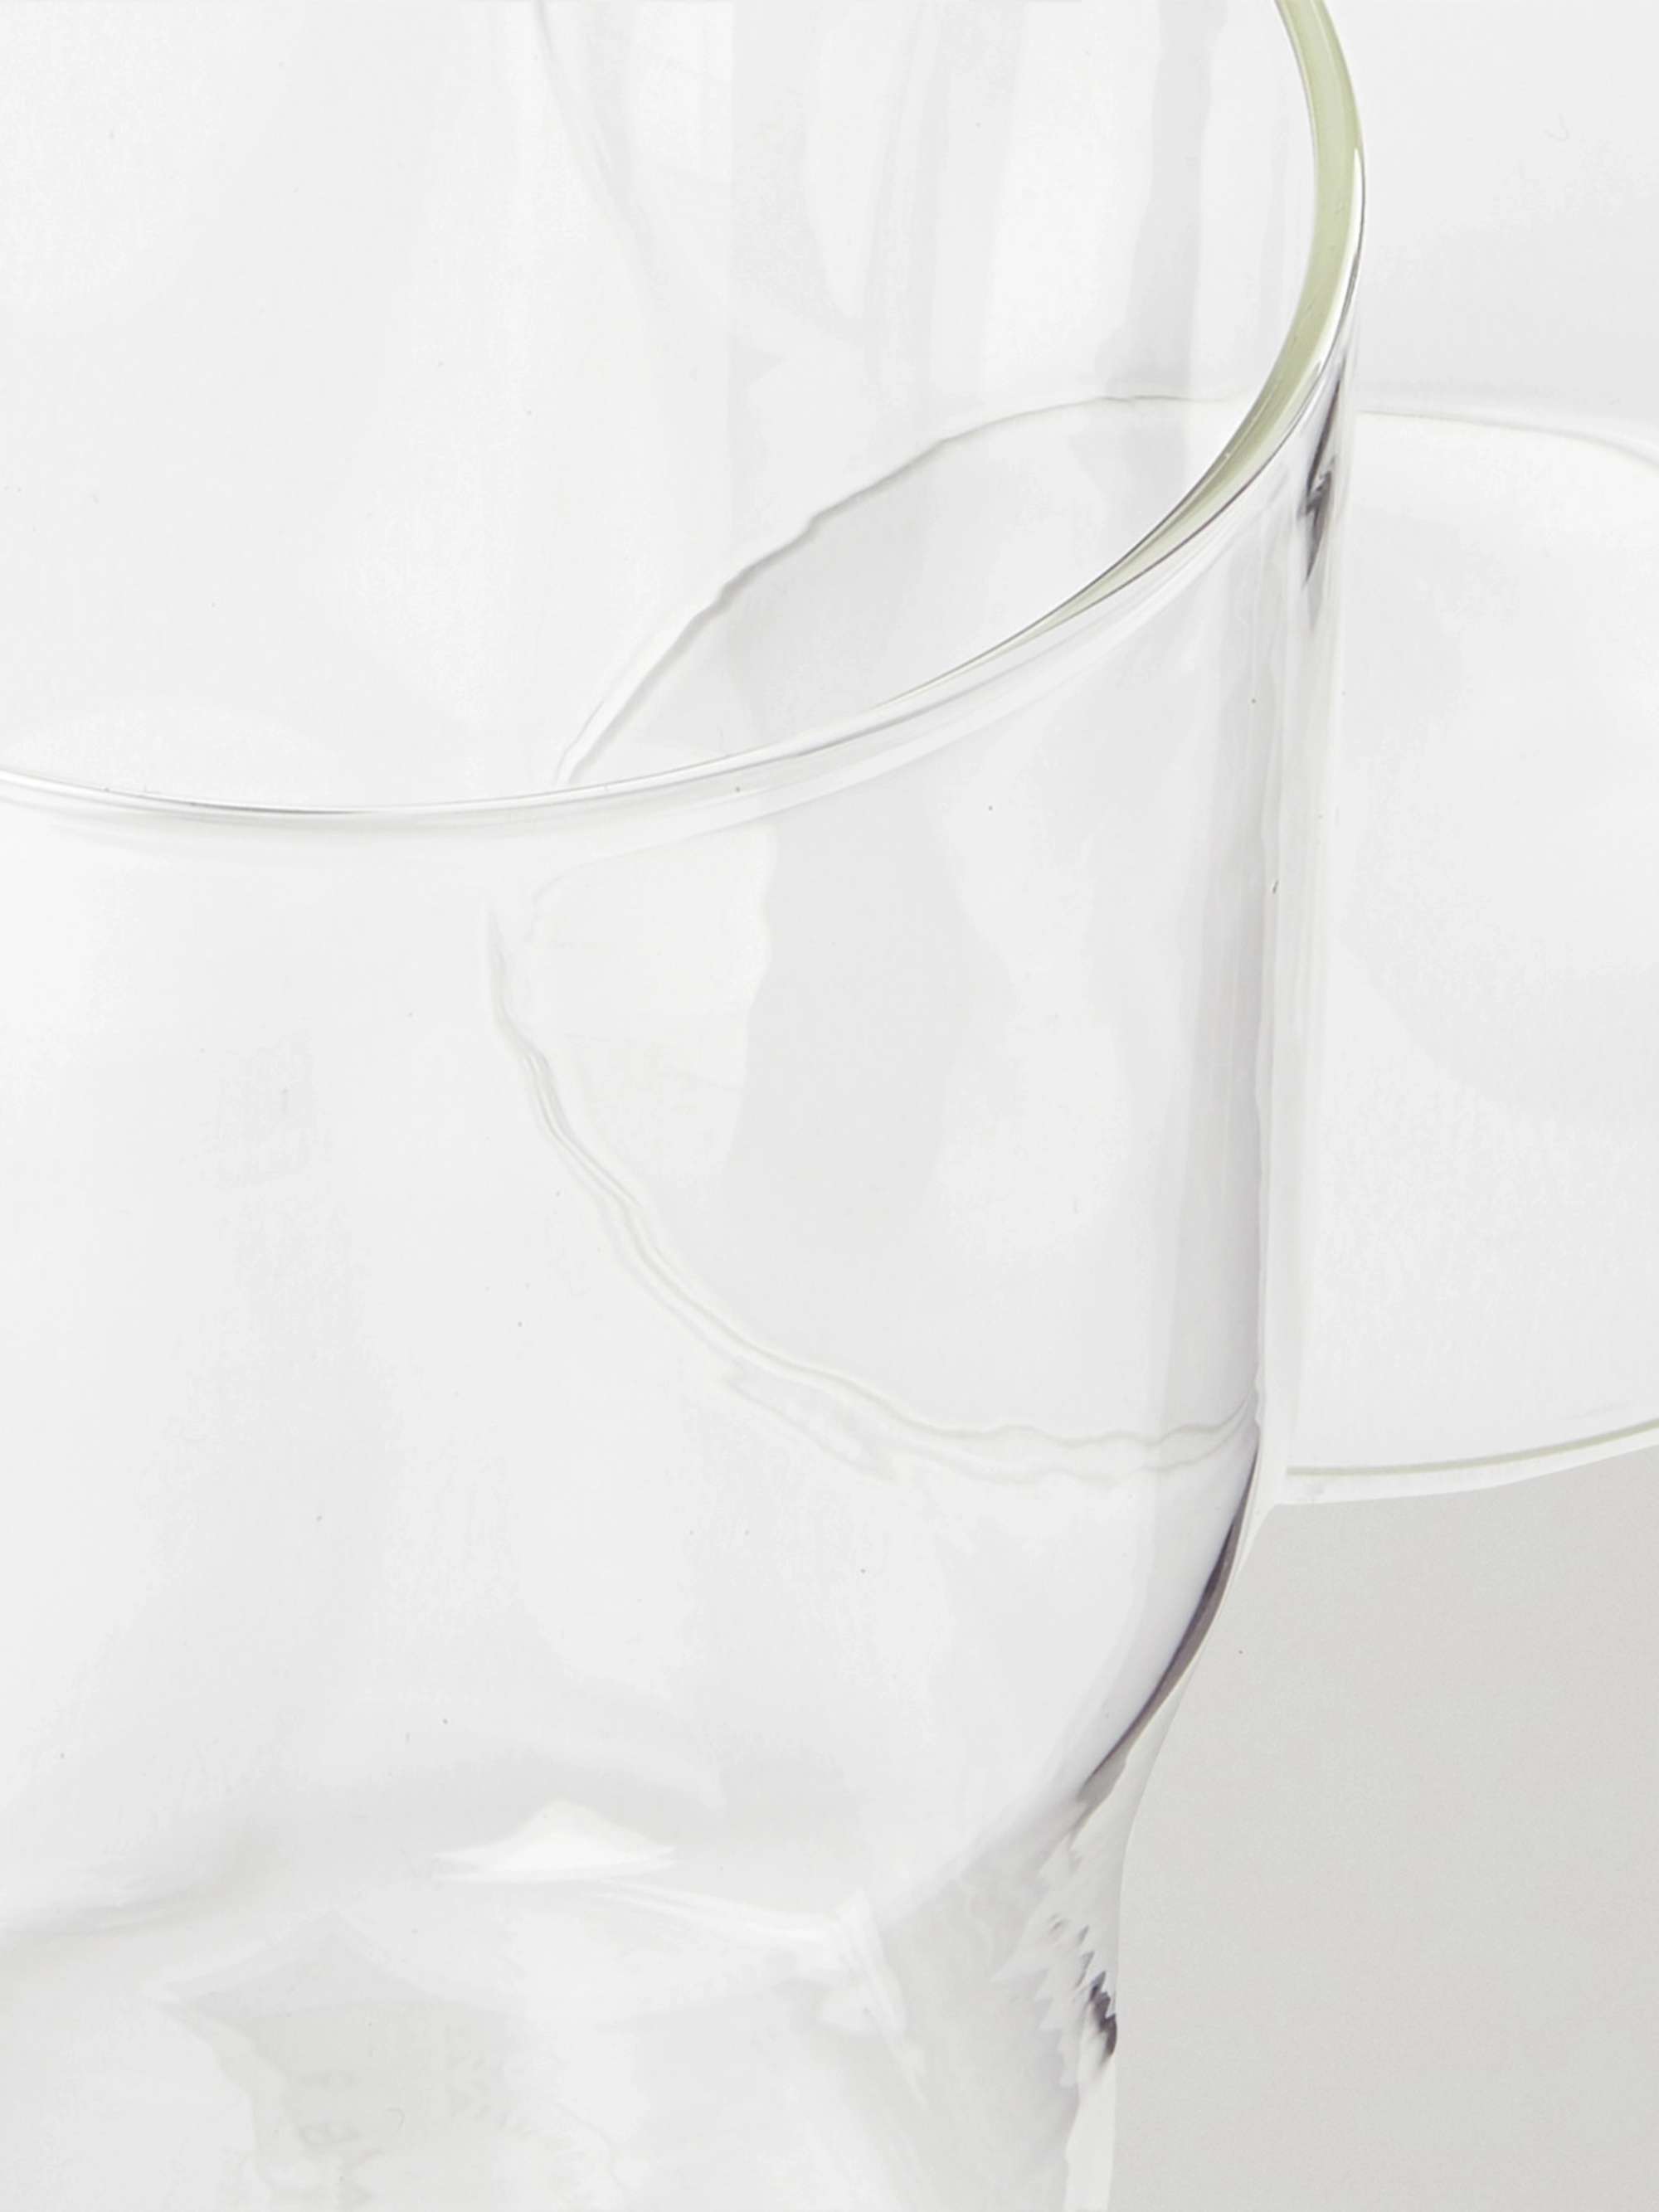 R+D.LAB Helg Bevanda Set of Two Glasses